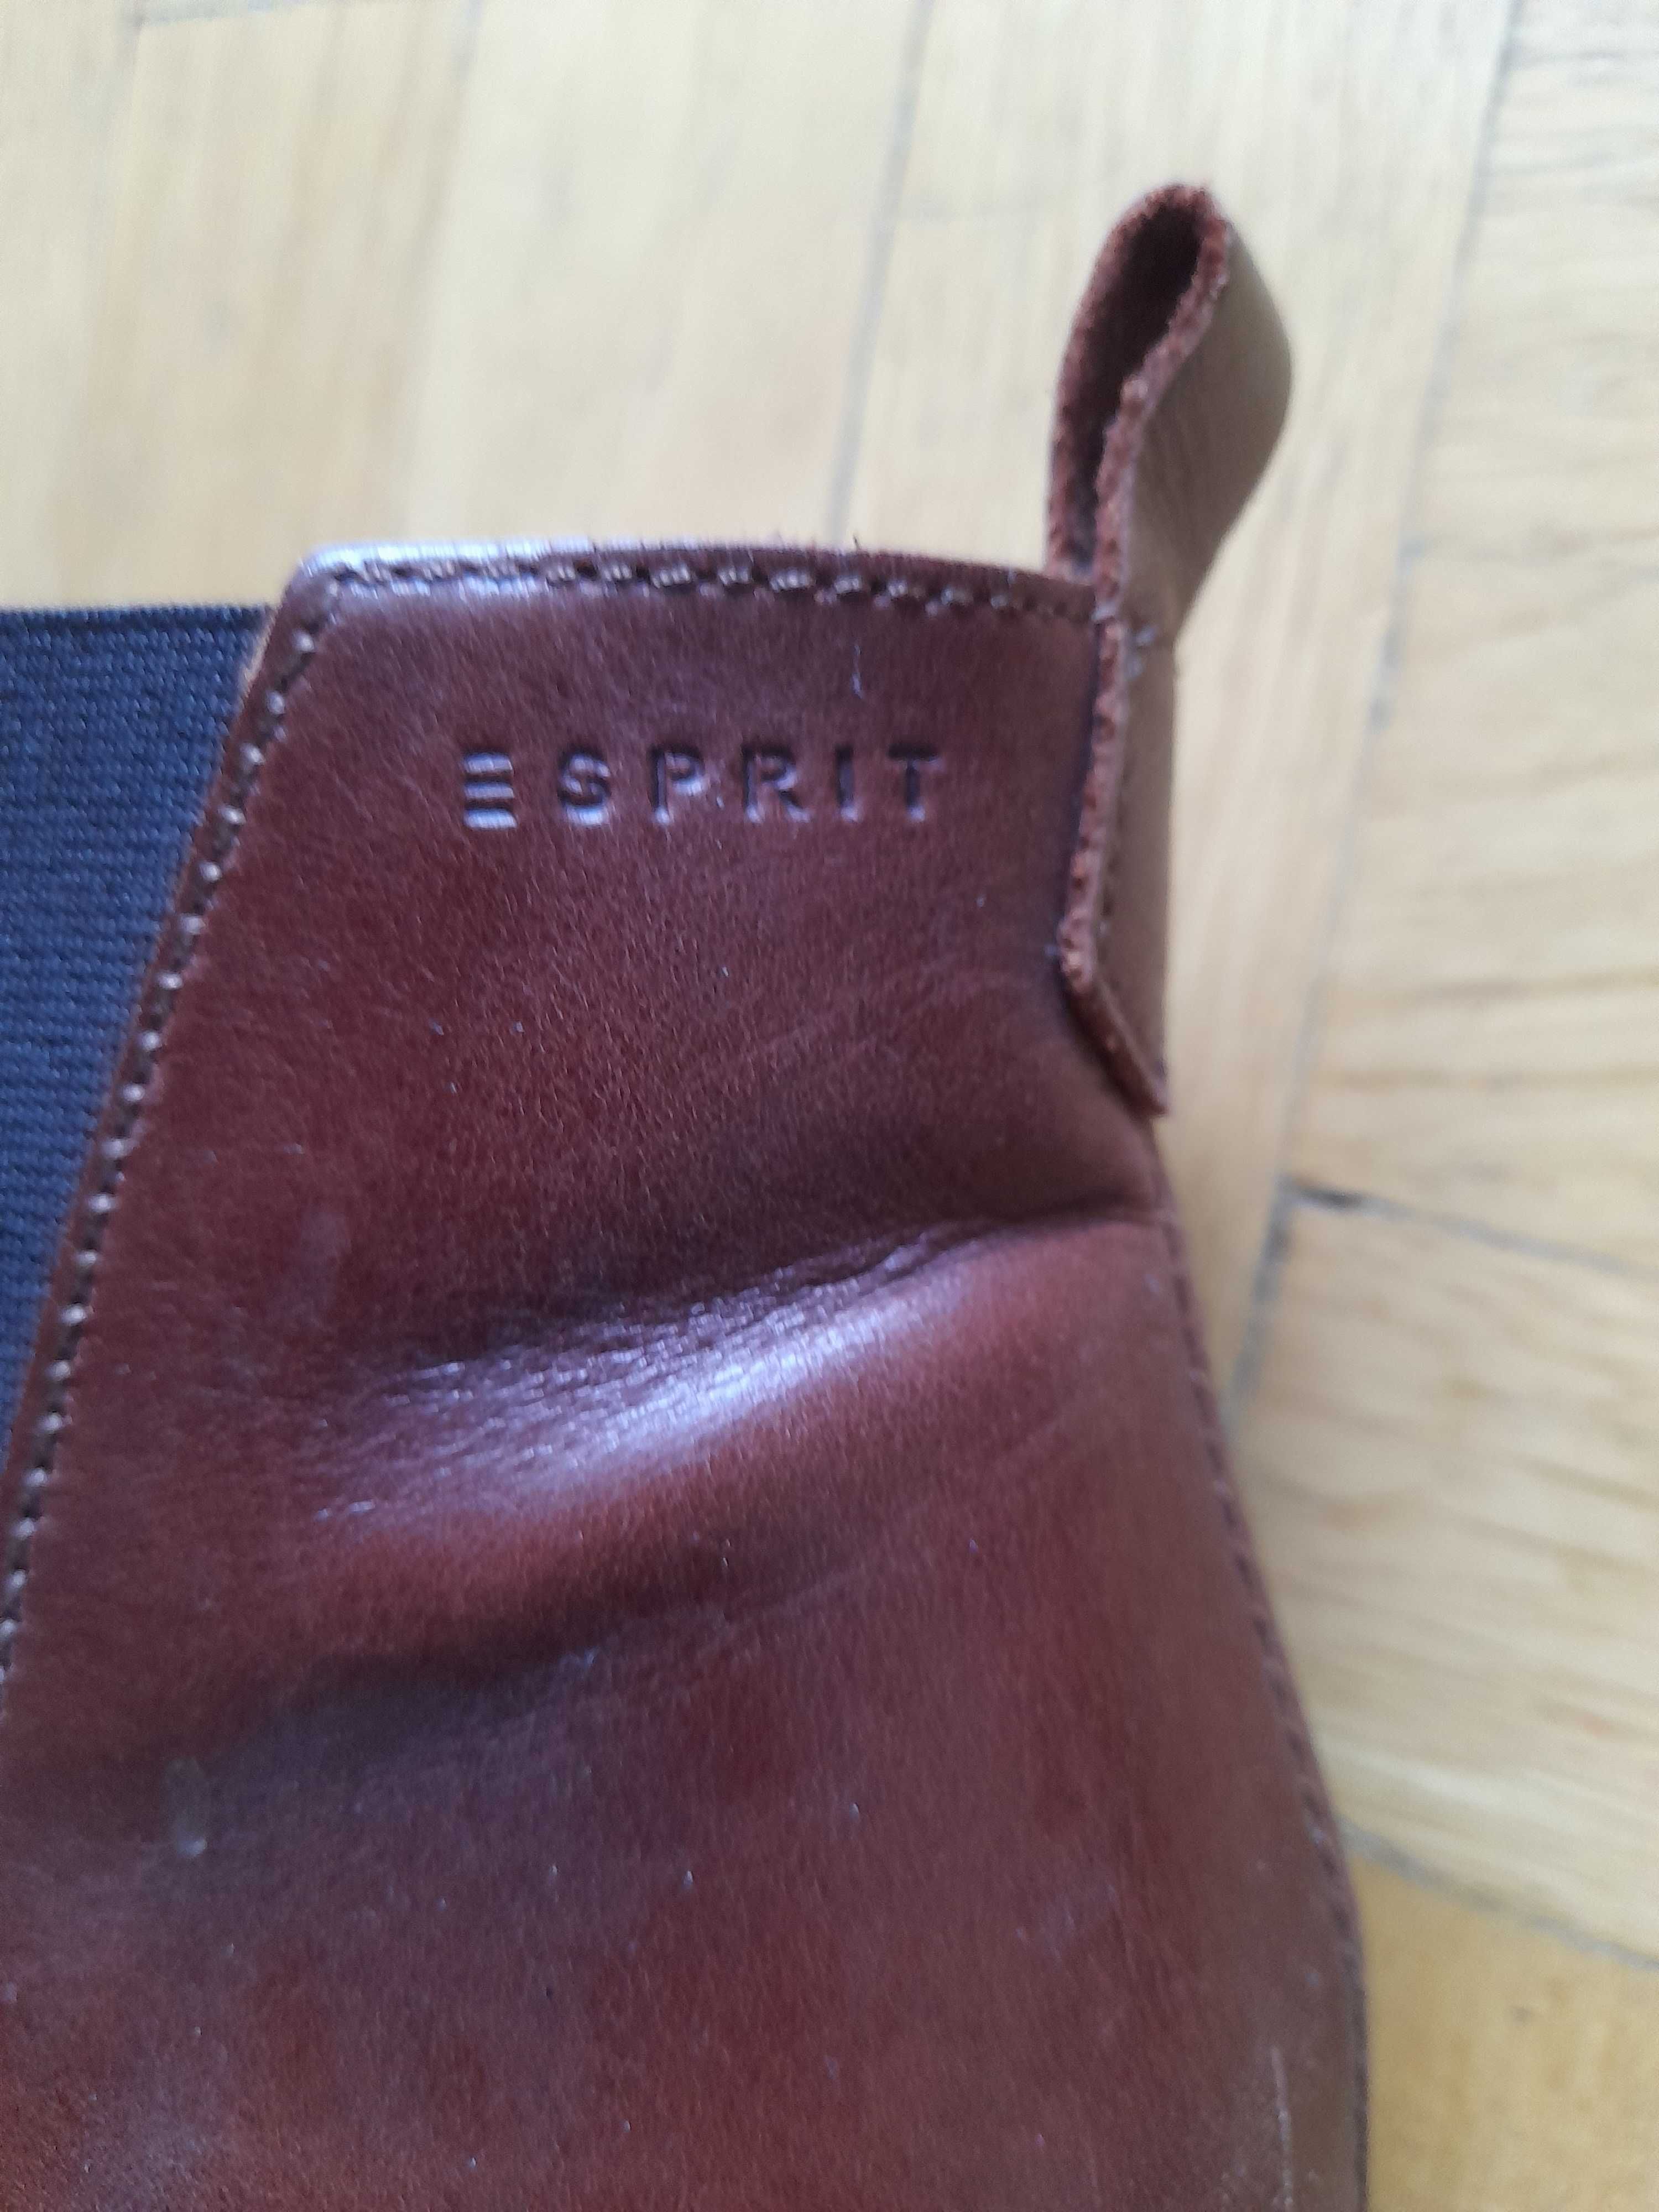 Buty szyblety damskie brązowe, krótkie botki marki ESPRIT rozmiar 40